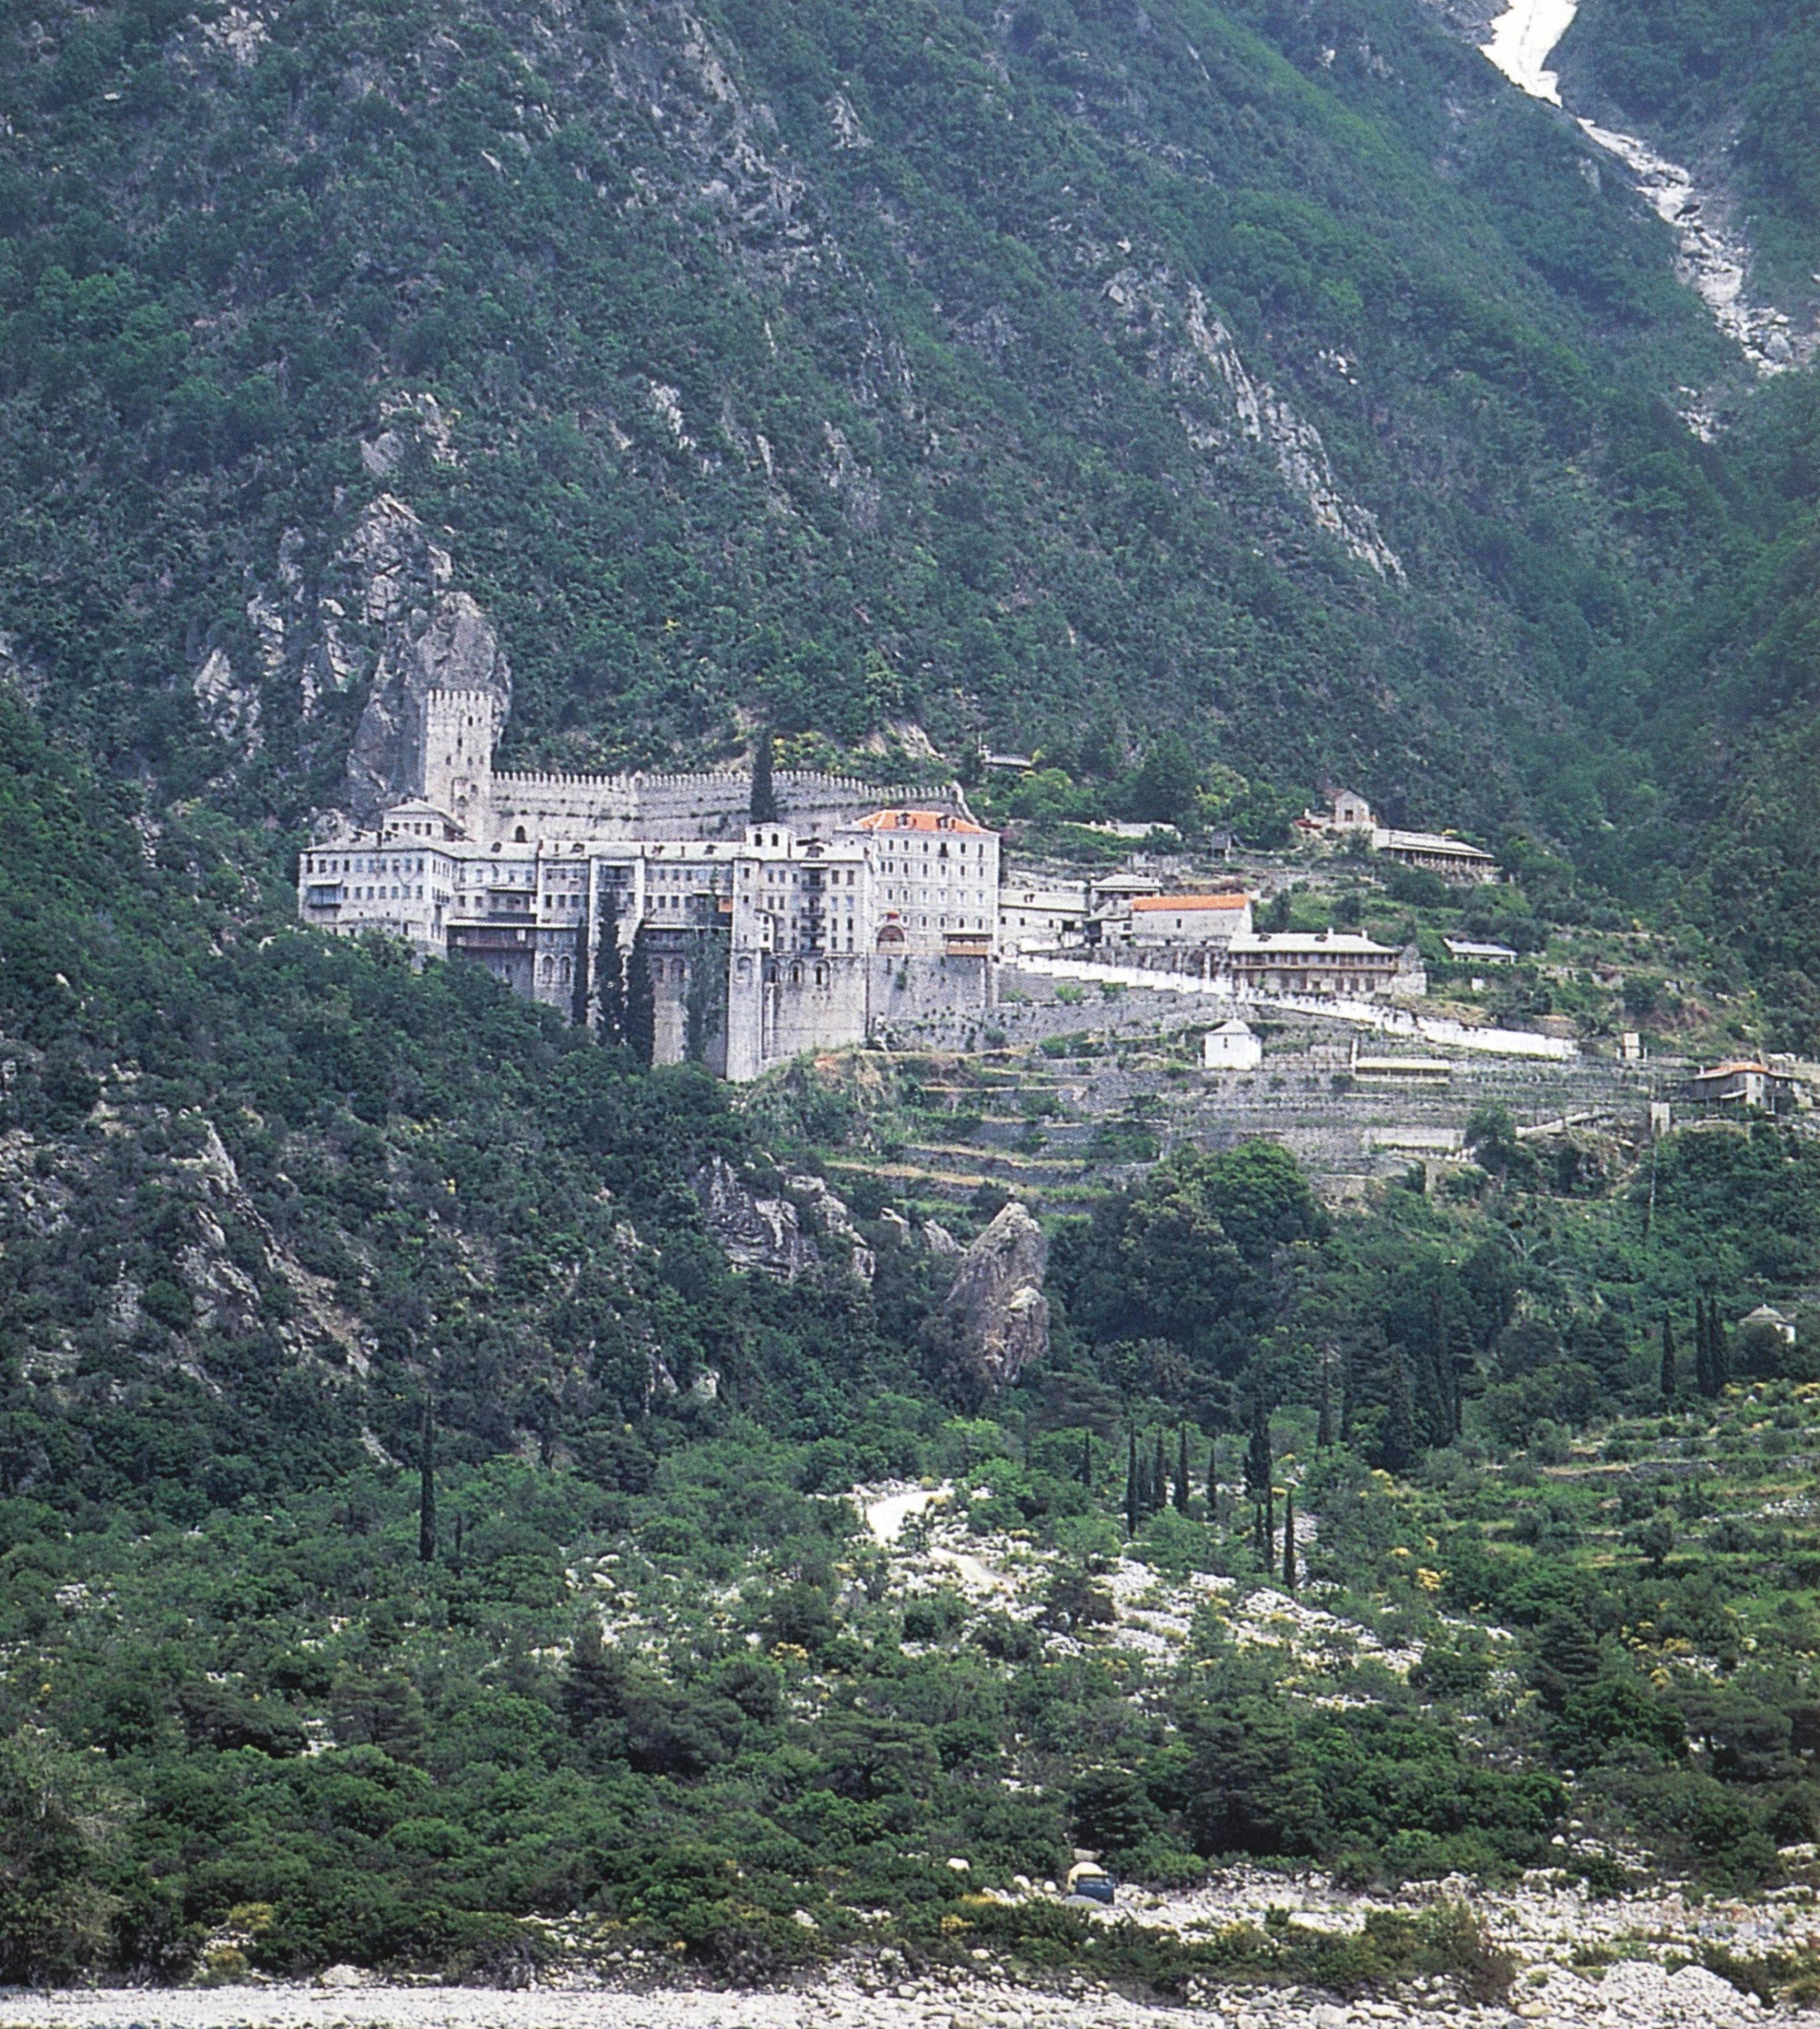 Ιερα Μονή Αγίου Παύλου. Εξωτερική άποψη. Holy Monastery of Agiou Pavlou (St Paul). External view.